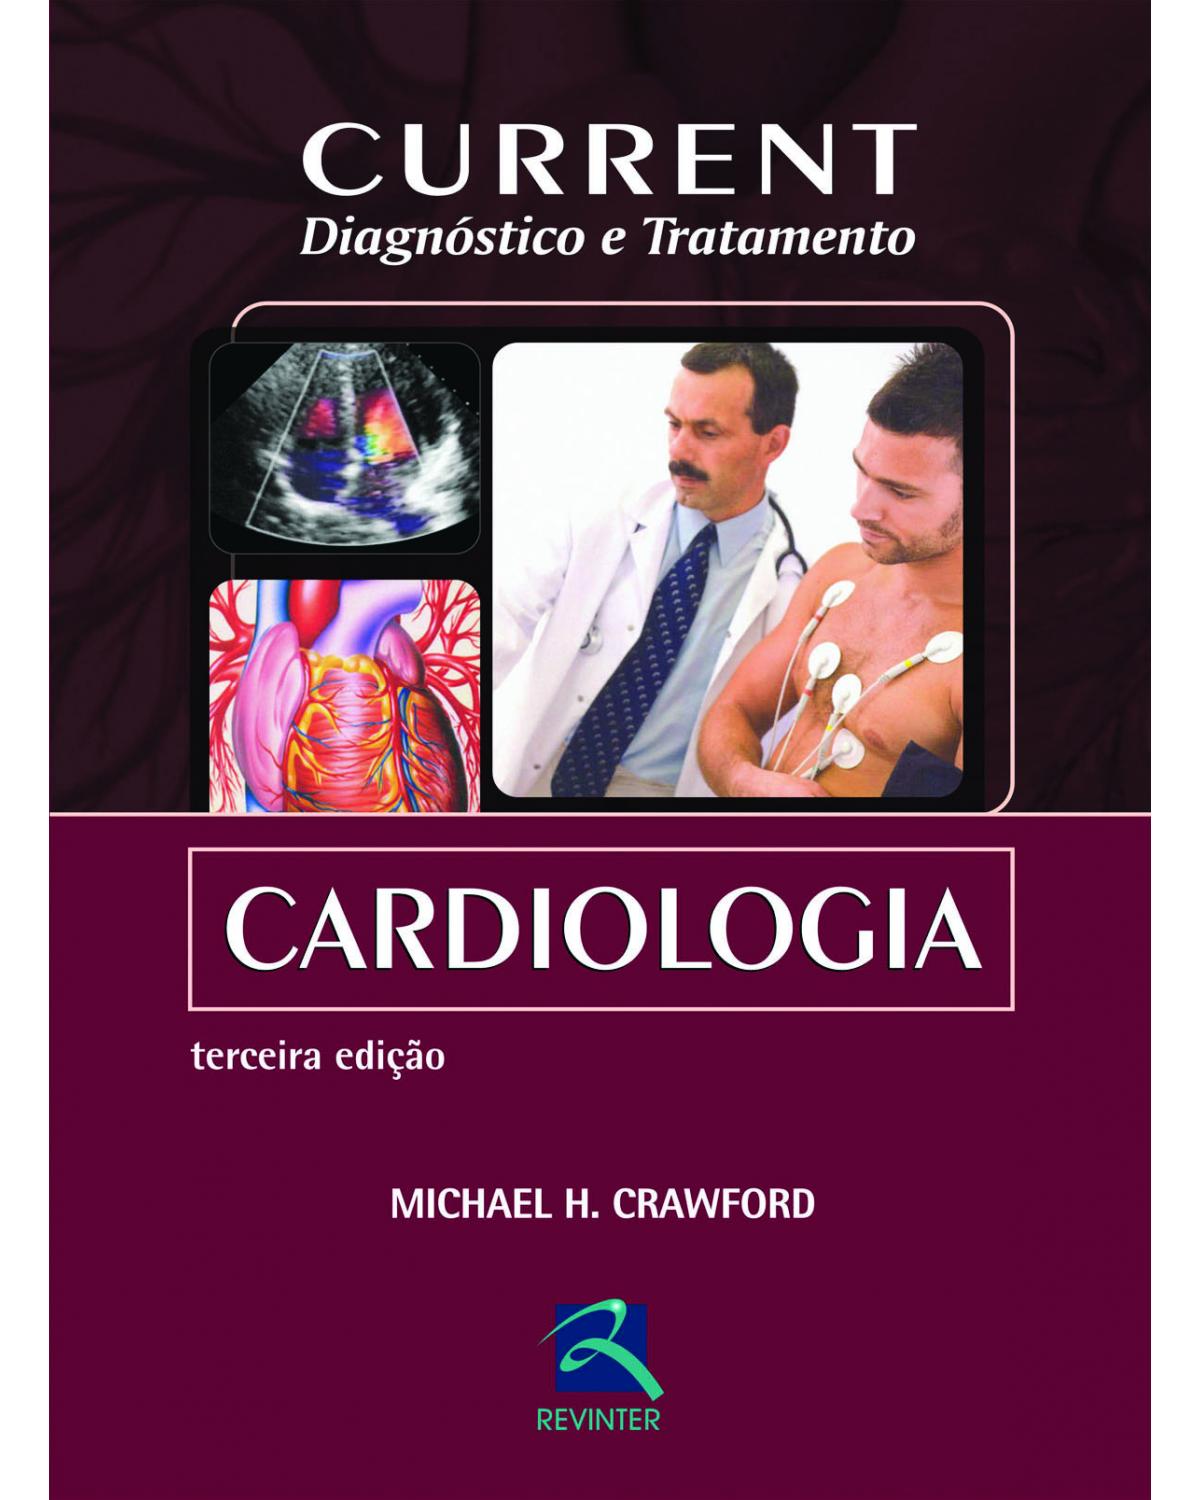 Current - Cardiologia - diagnóstico e tratamento - 3ª Edição | 2013